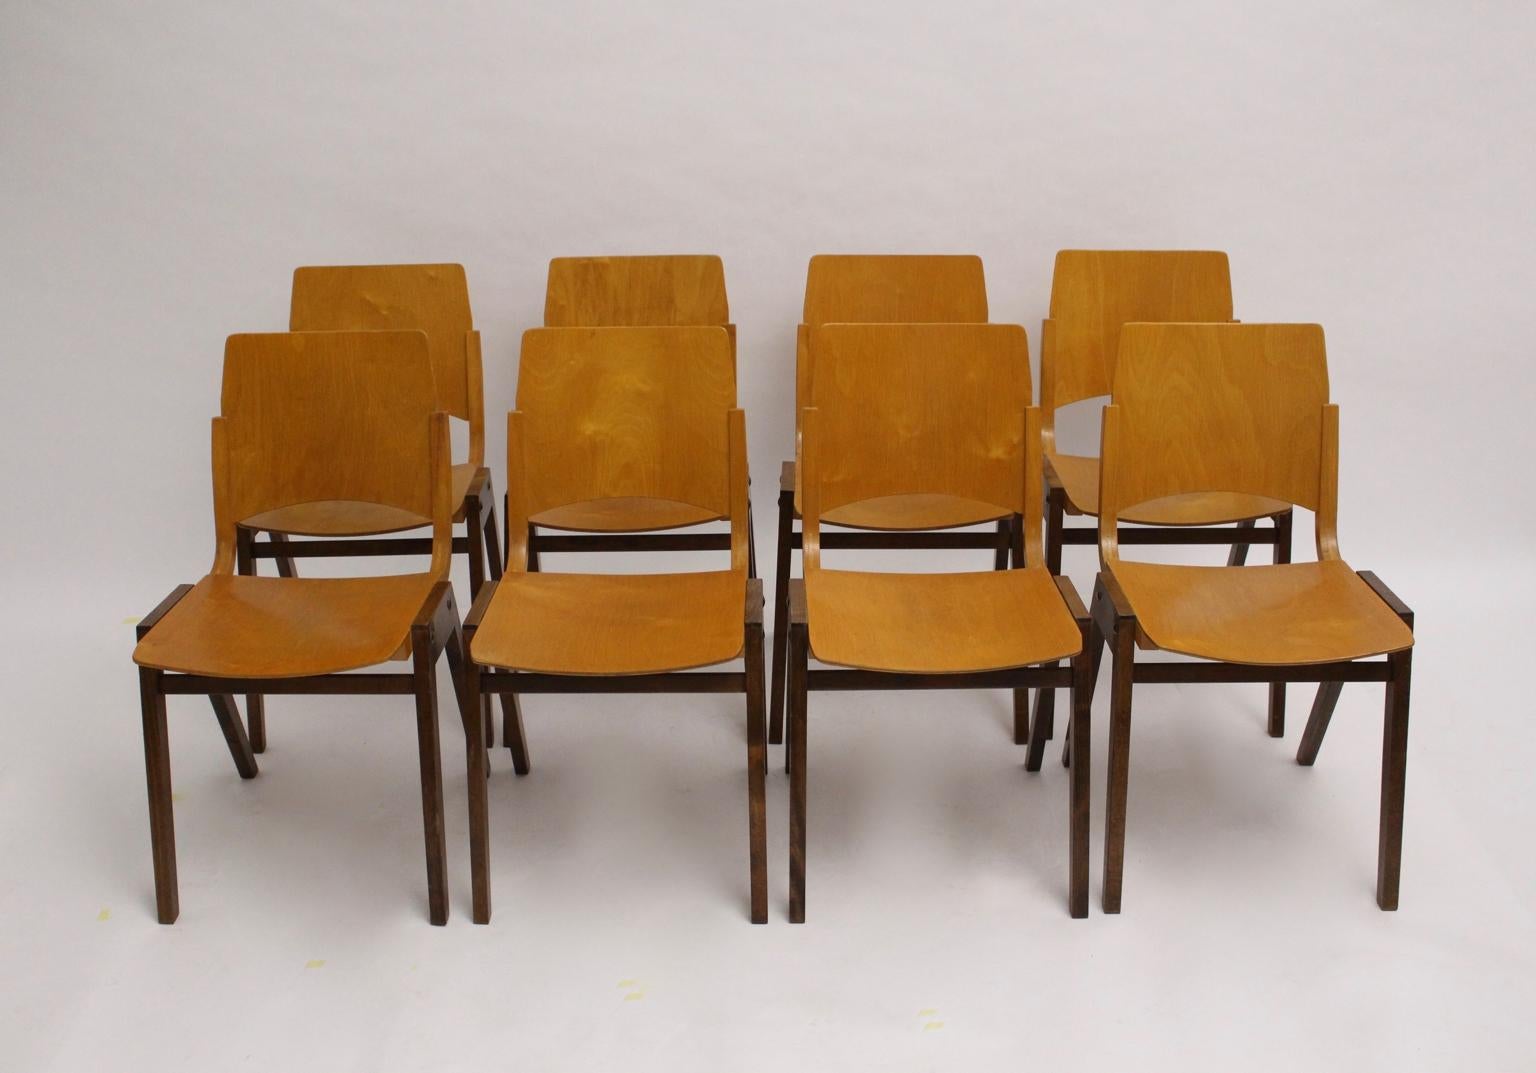 Mid Century Modern zeitloses Set von acht Vintage Esszimmerstühlen Modell P7 aus Buche entworfen von Roland Rainer für die Wiener Stadthalle 1952 und ausgeführt von Emil & Alfred Pollak Wien.
Diese Stühle wurden für den Bühnenbereich der Wiener